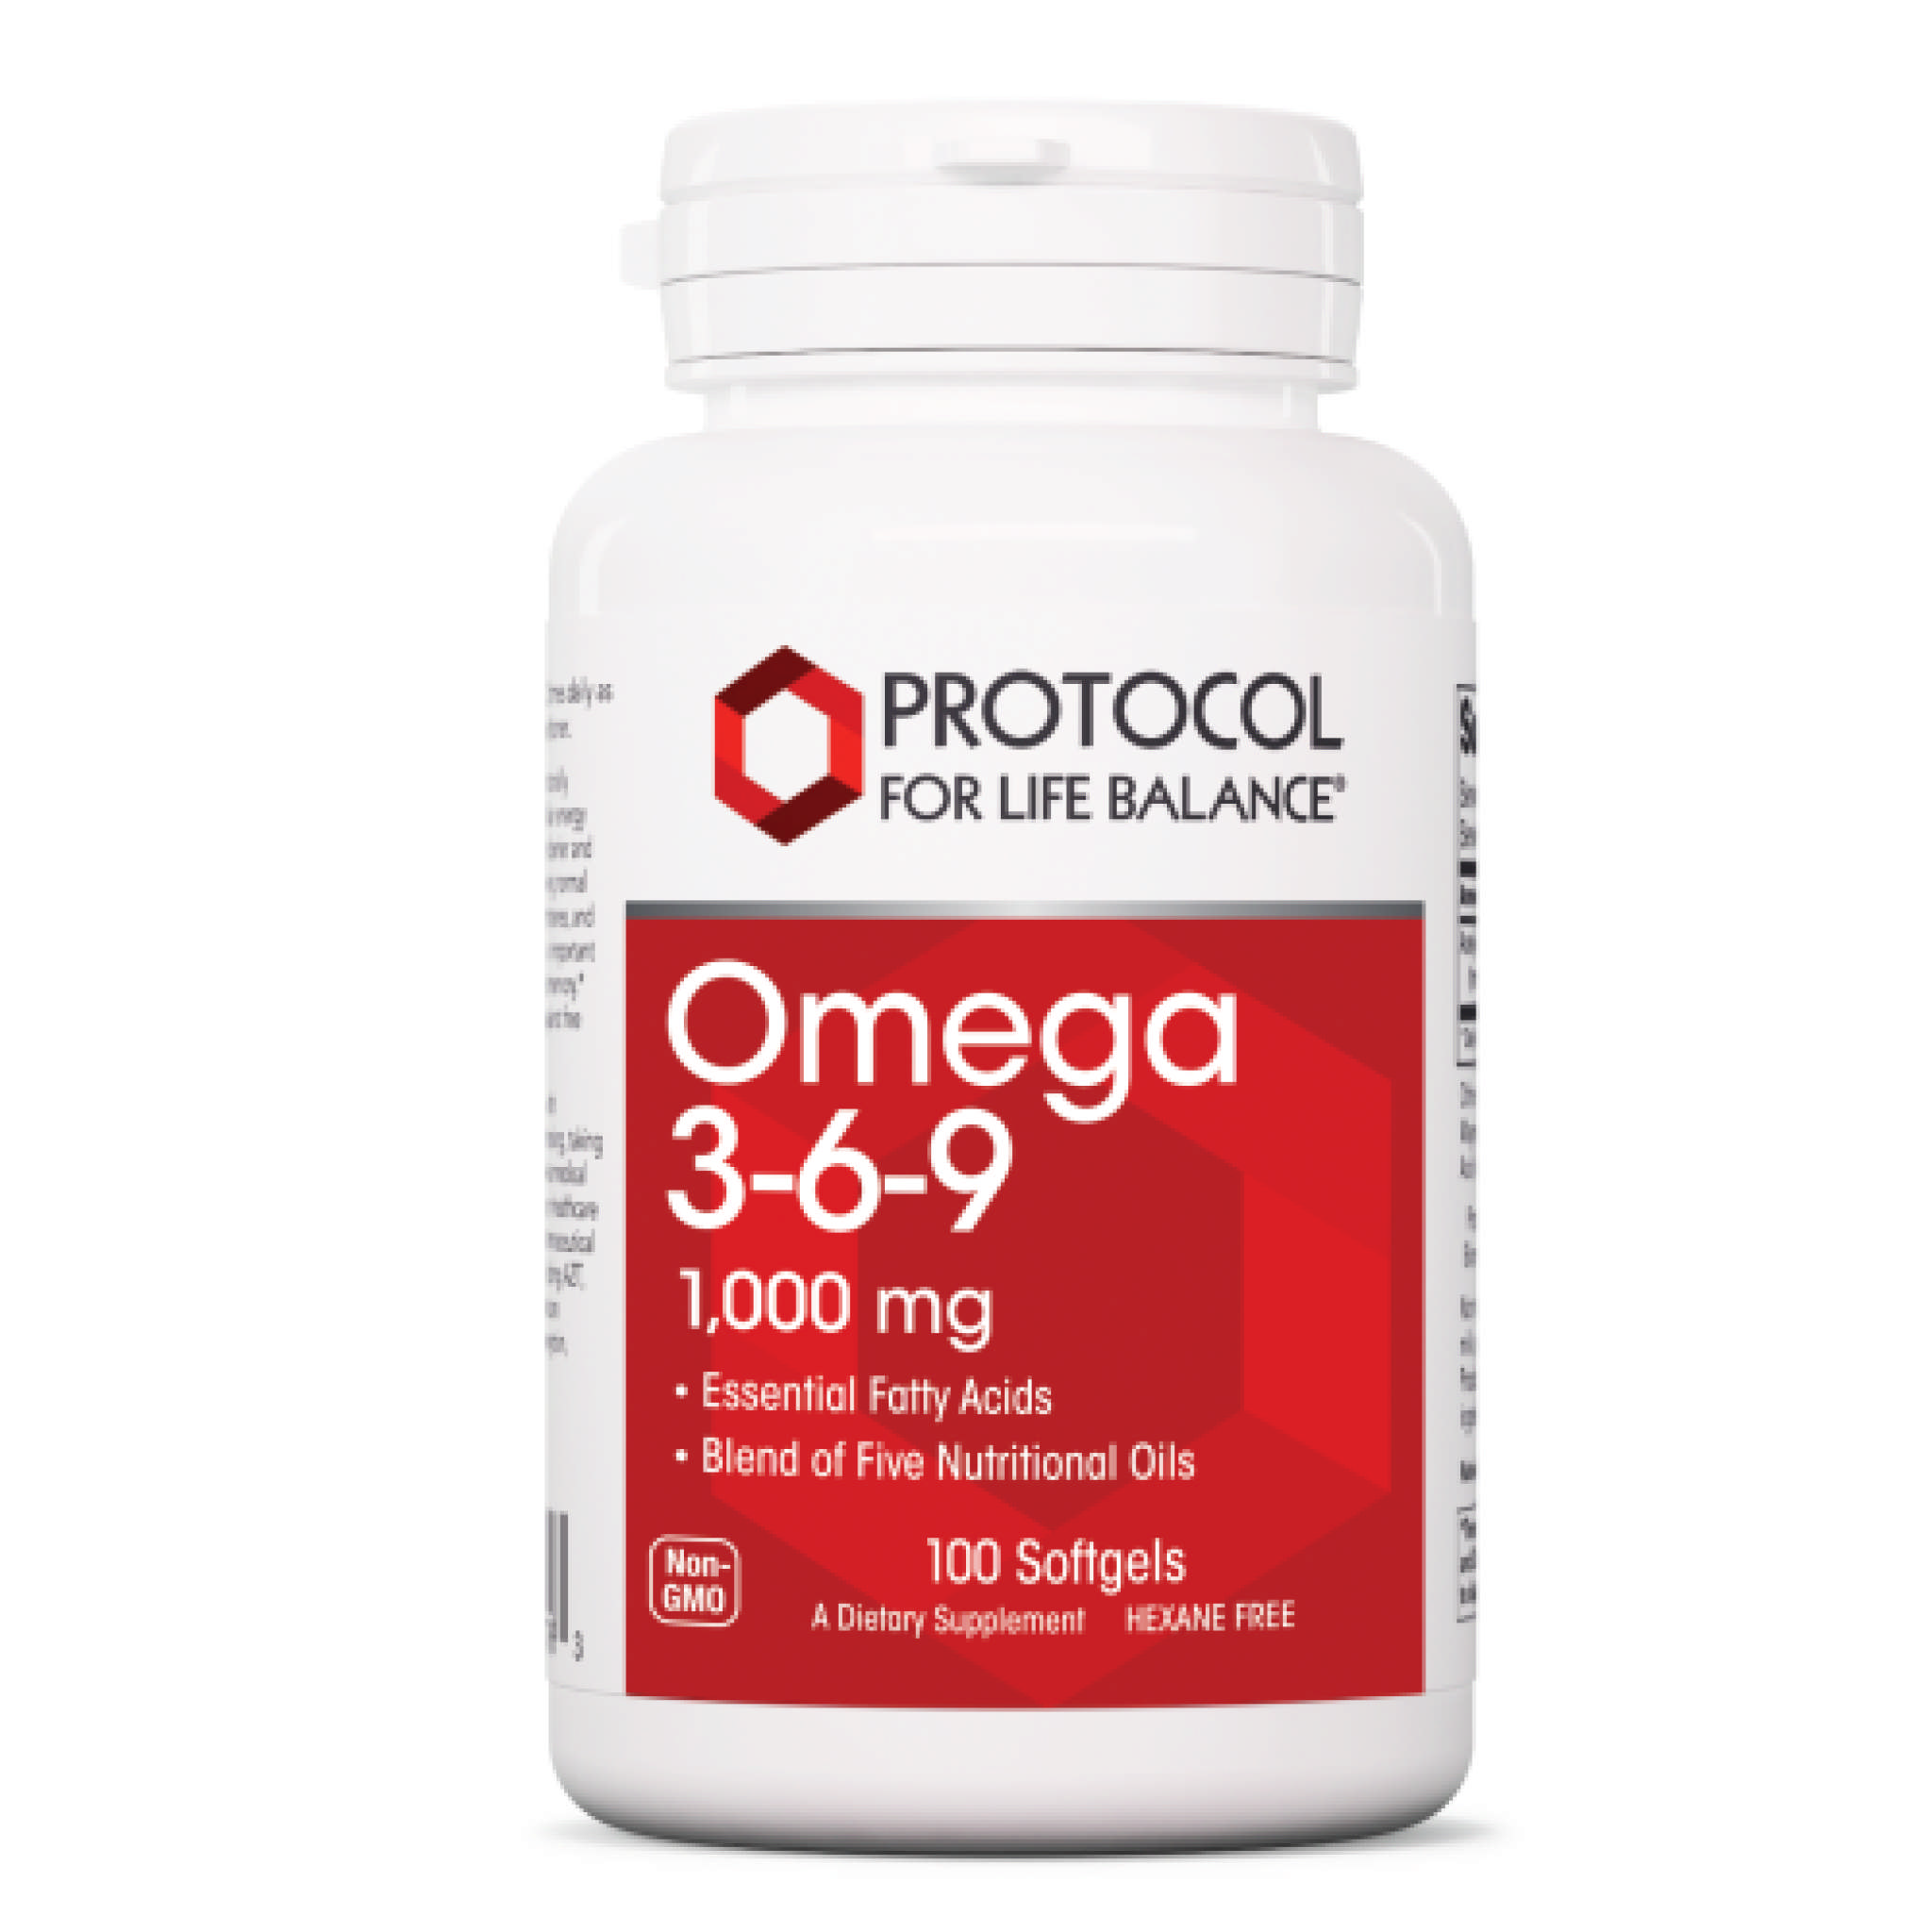 Protocol For Life Balance - Omega 3 6 9 1000 mg softgel